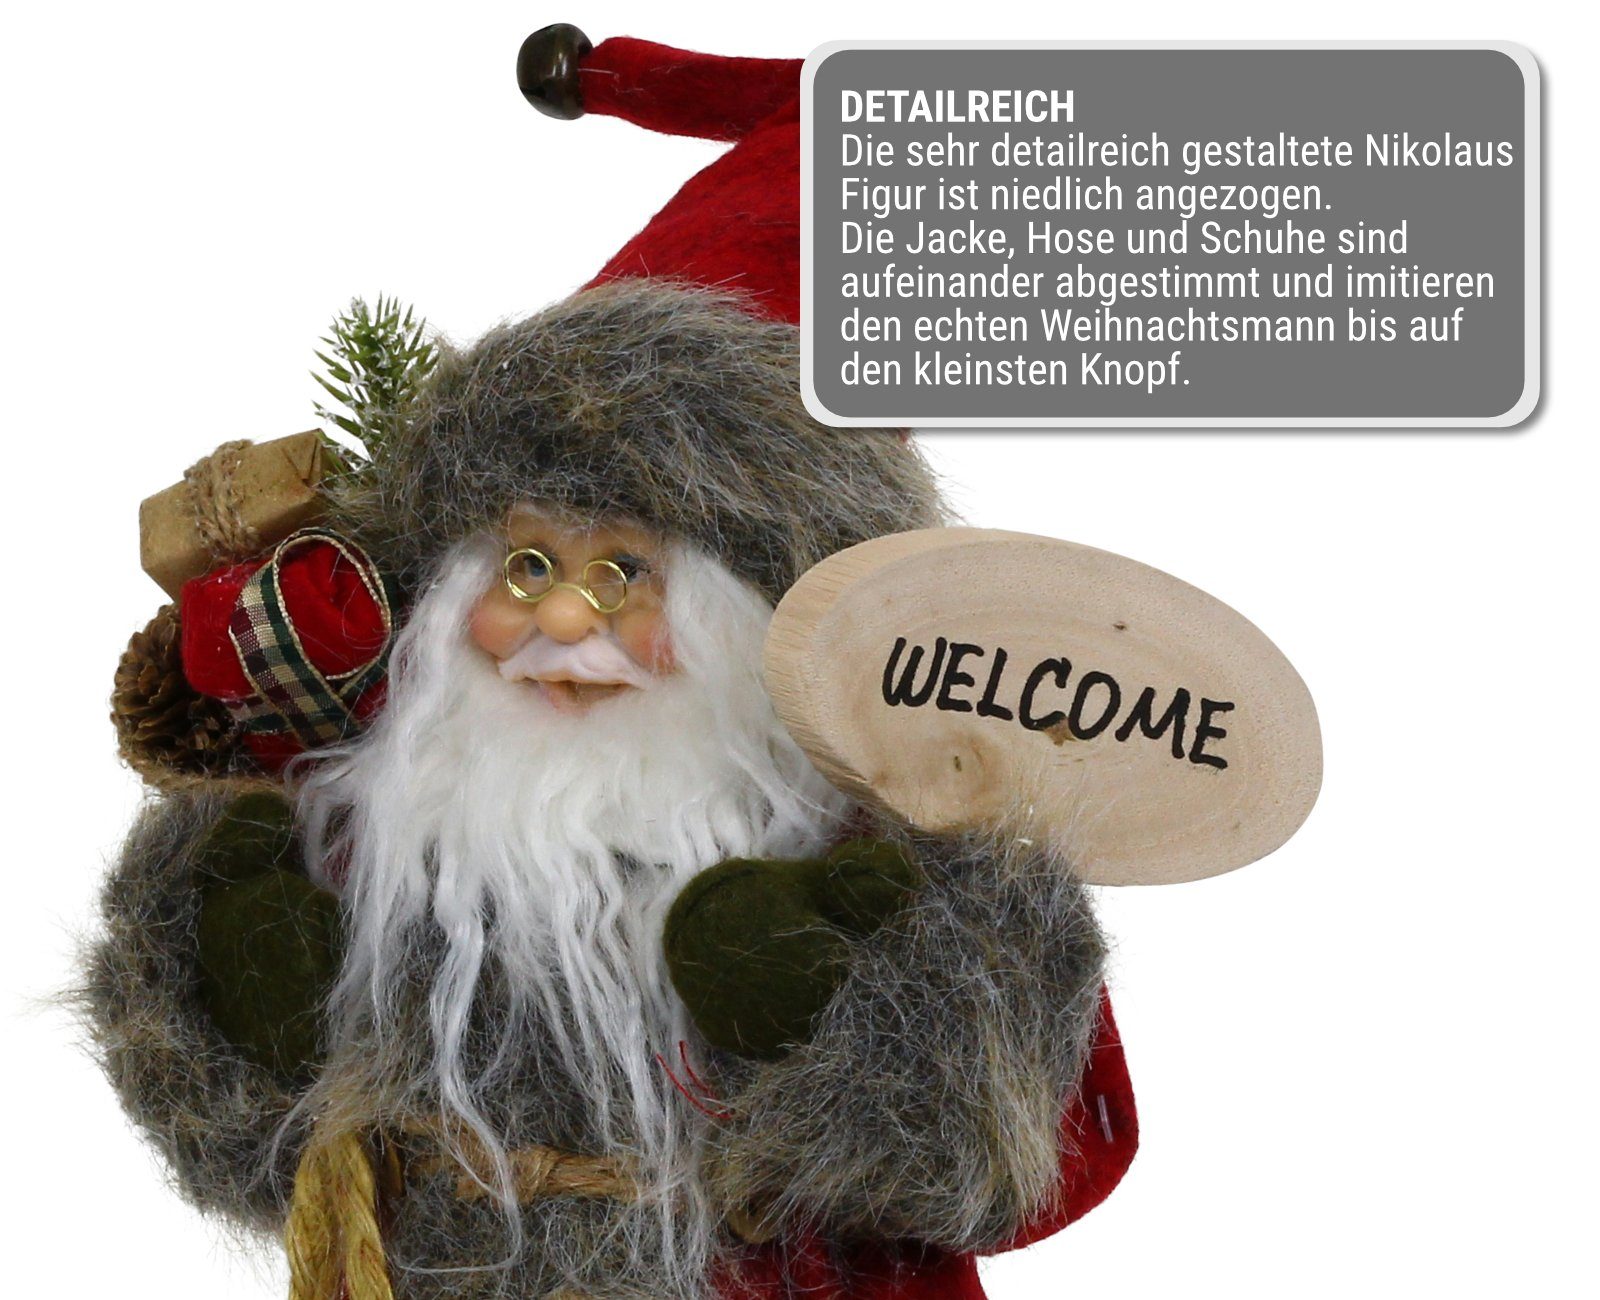 Weihnachtsfigur Nikolaus Weihnachtsmann mit stehend HAGO Figur Geschenkesack rot Weihnachtsdeko